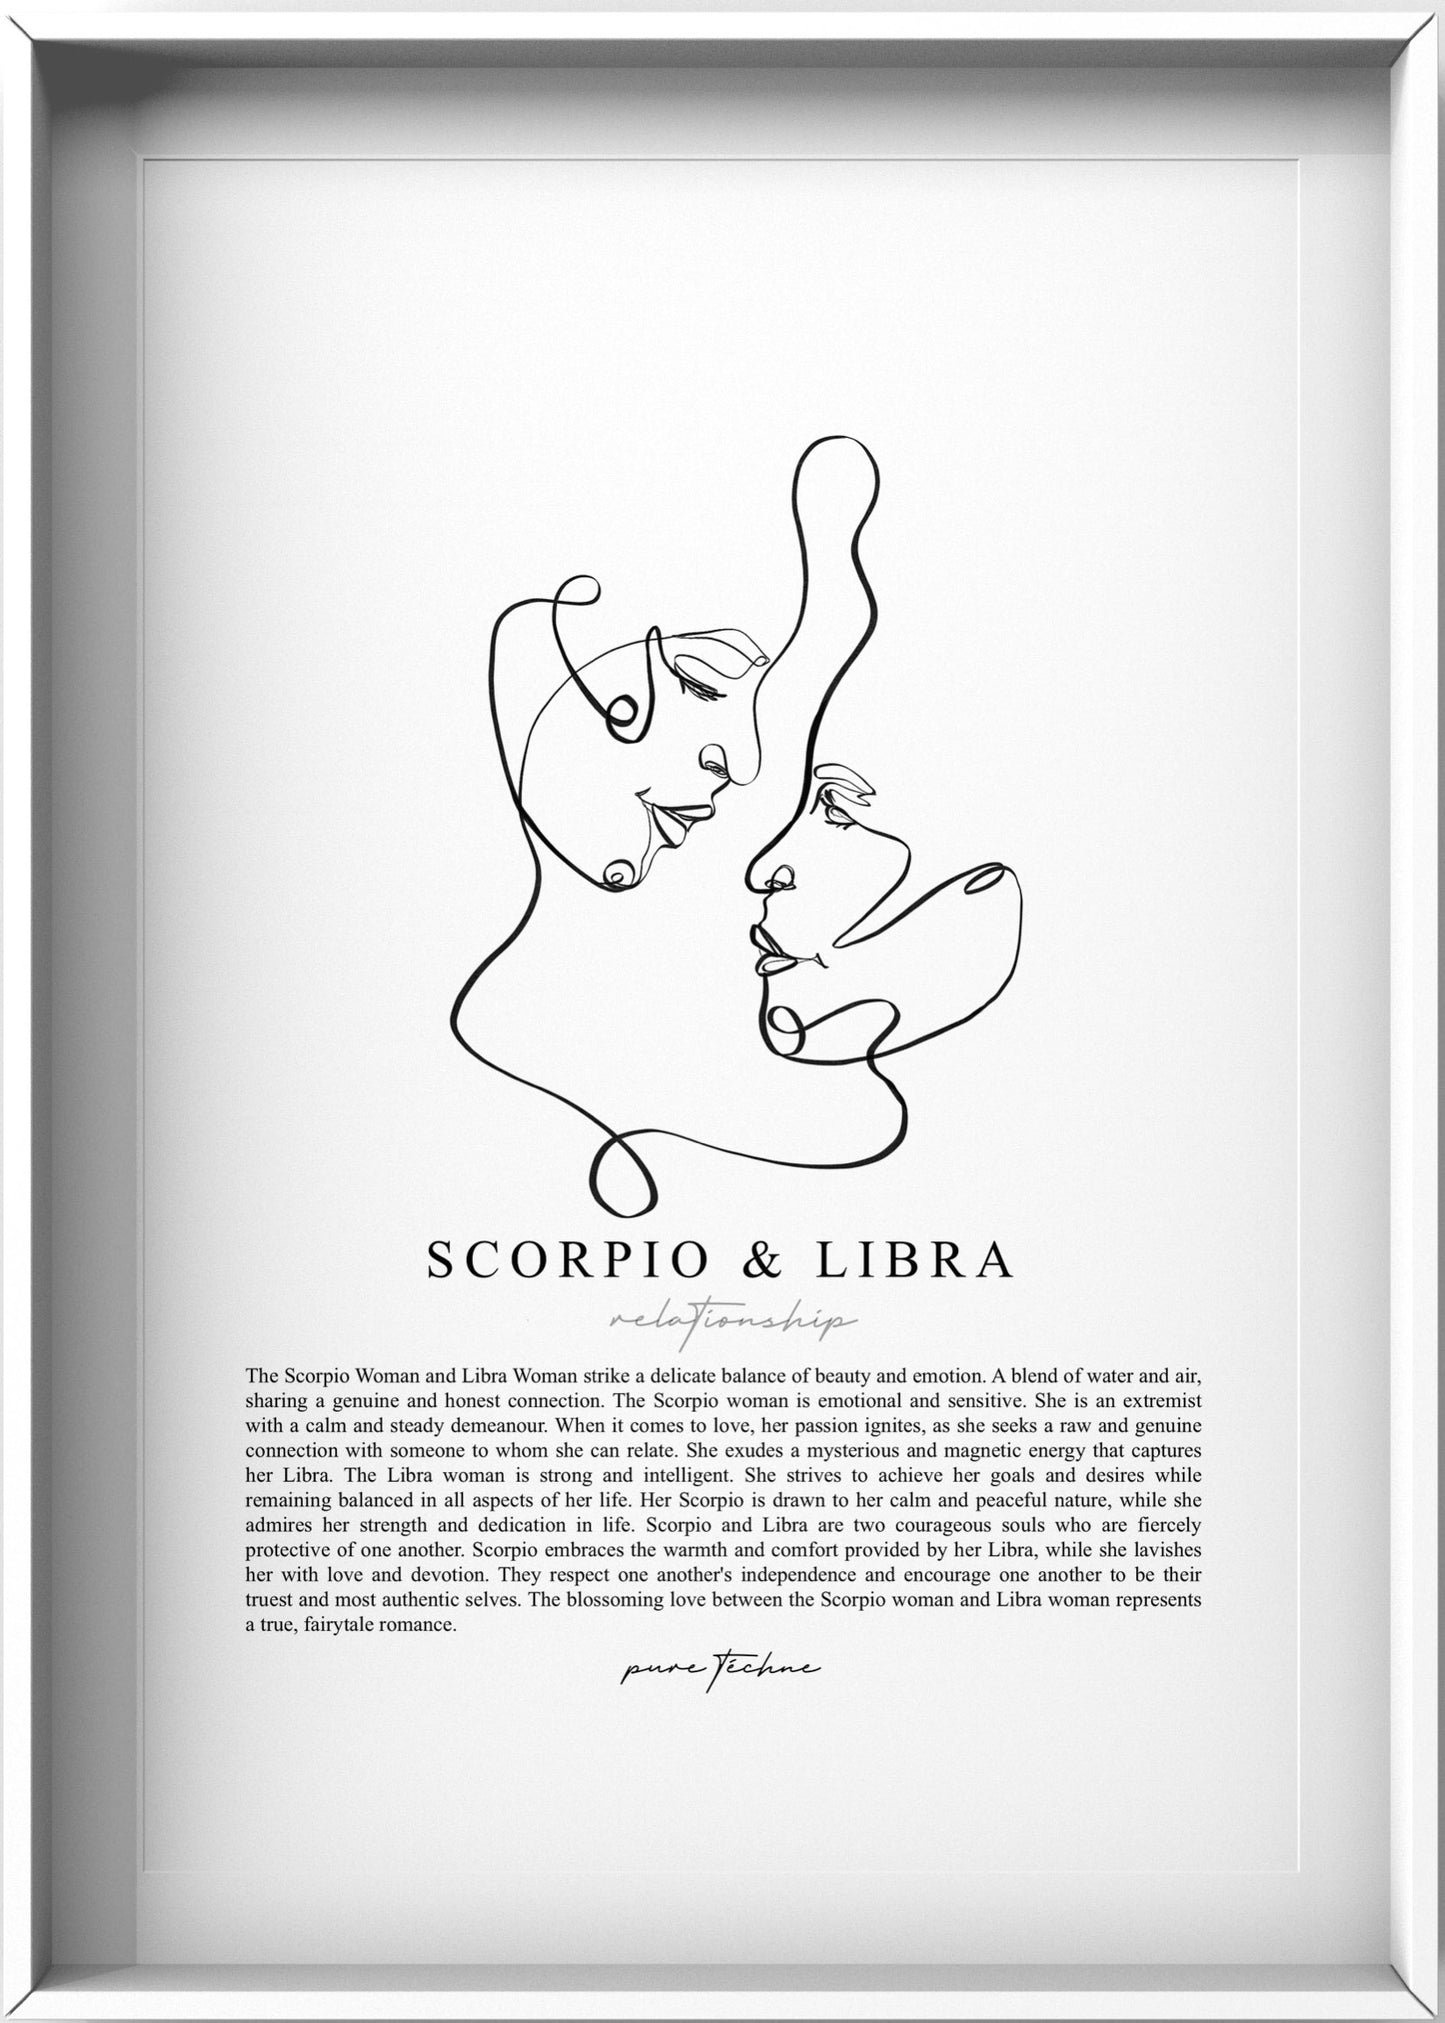 Scorpio Woman & Libra Woman